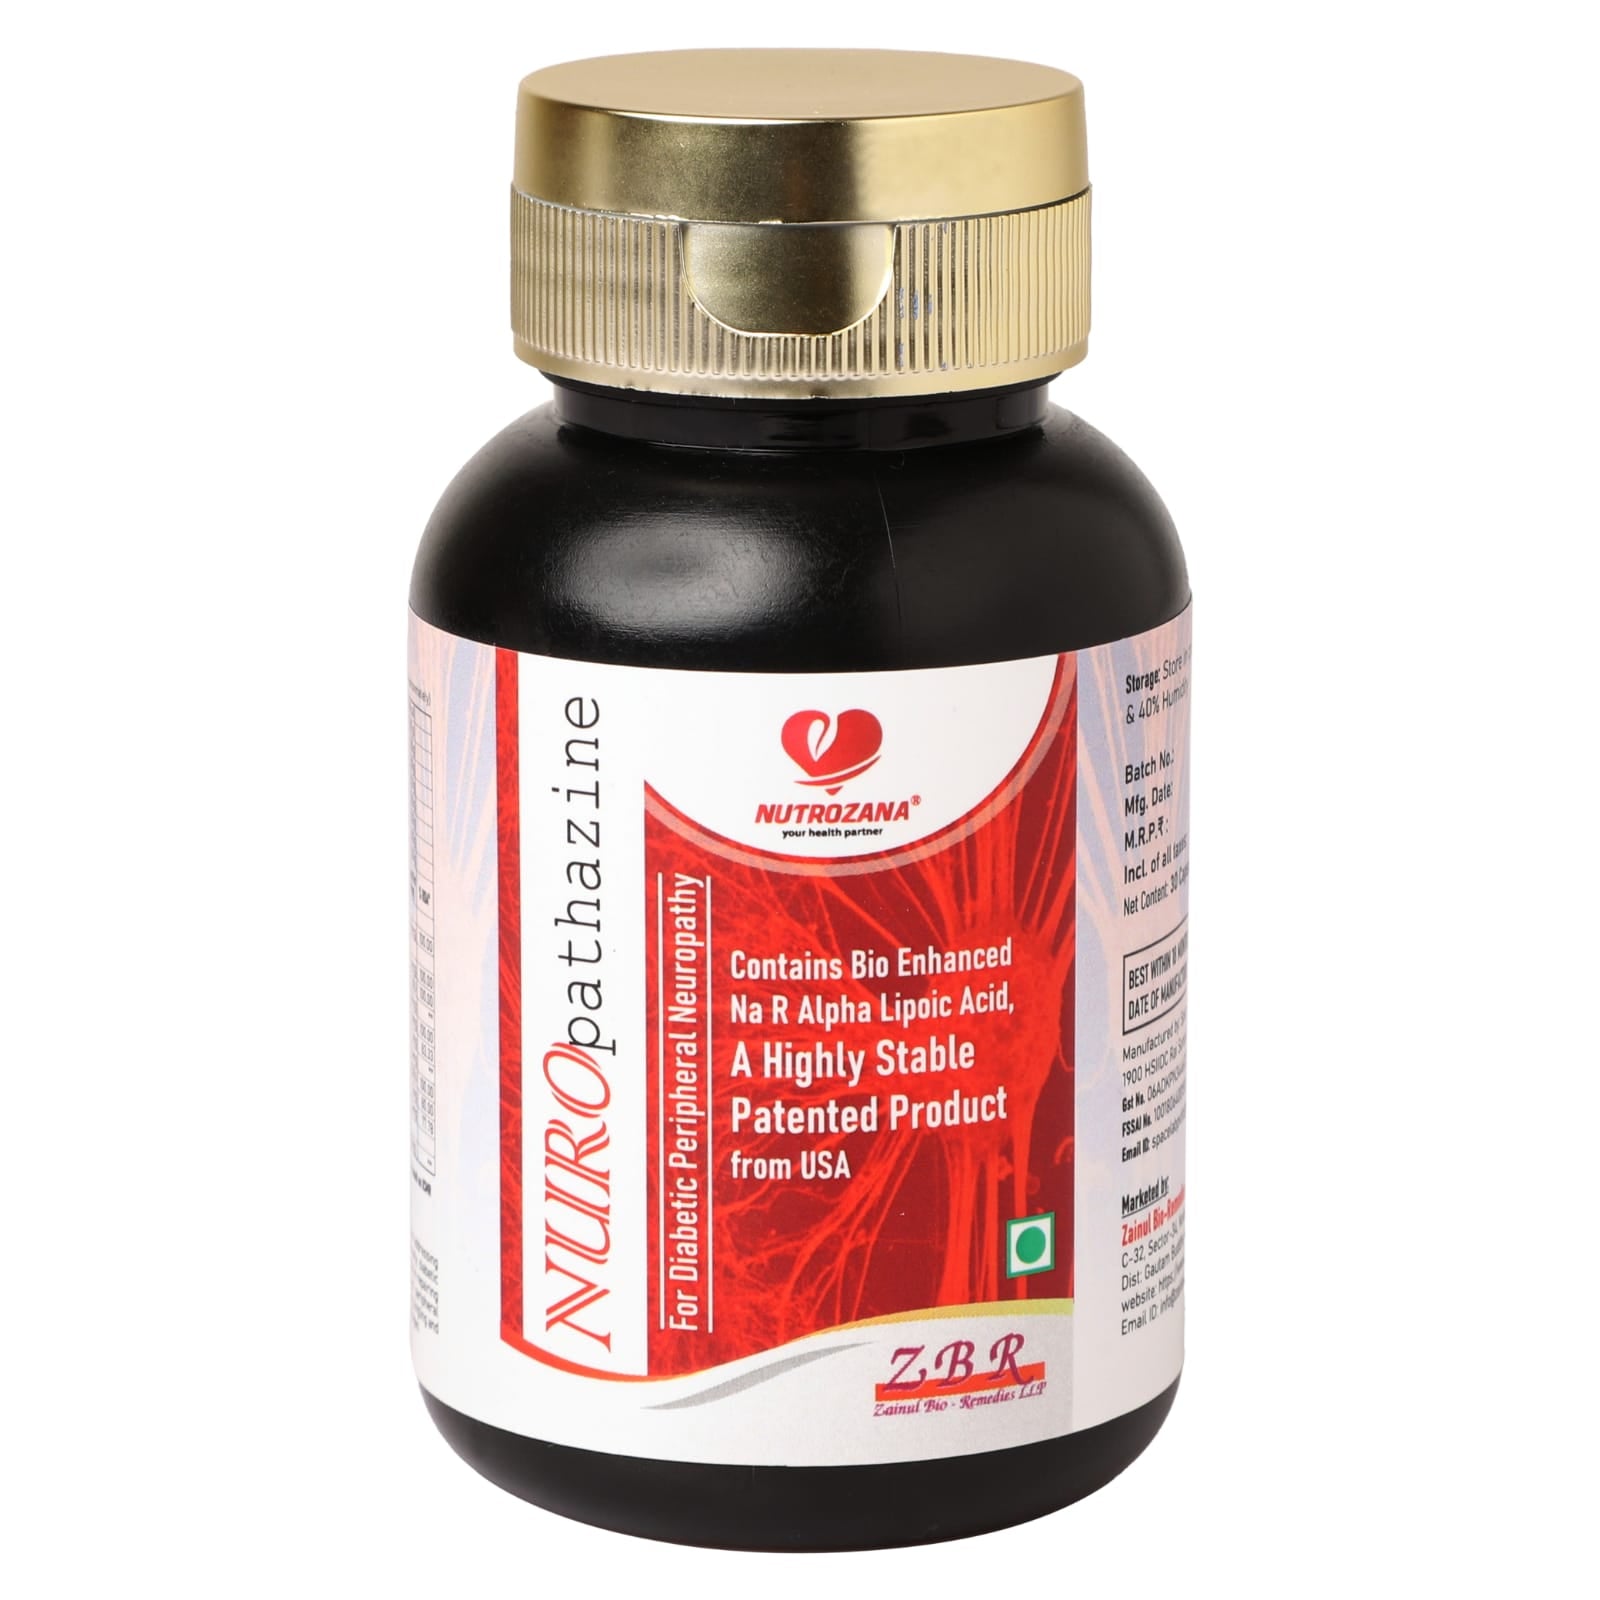 nuropathazine  daibatic supplement